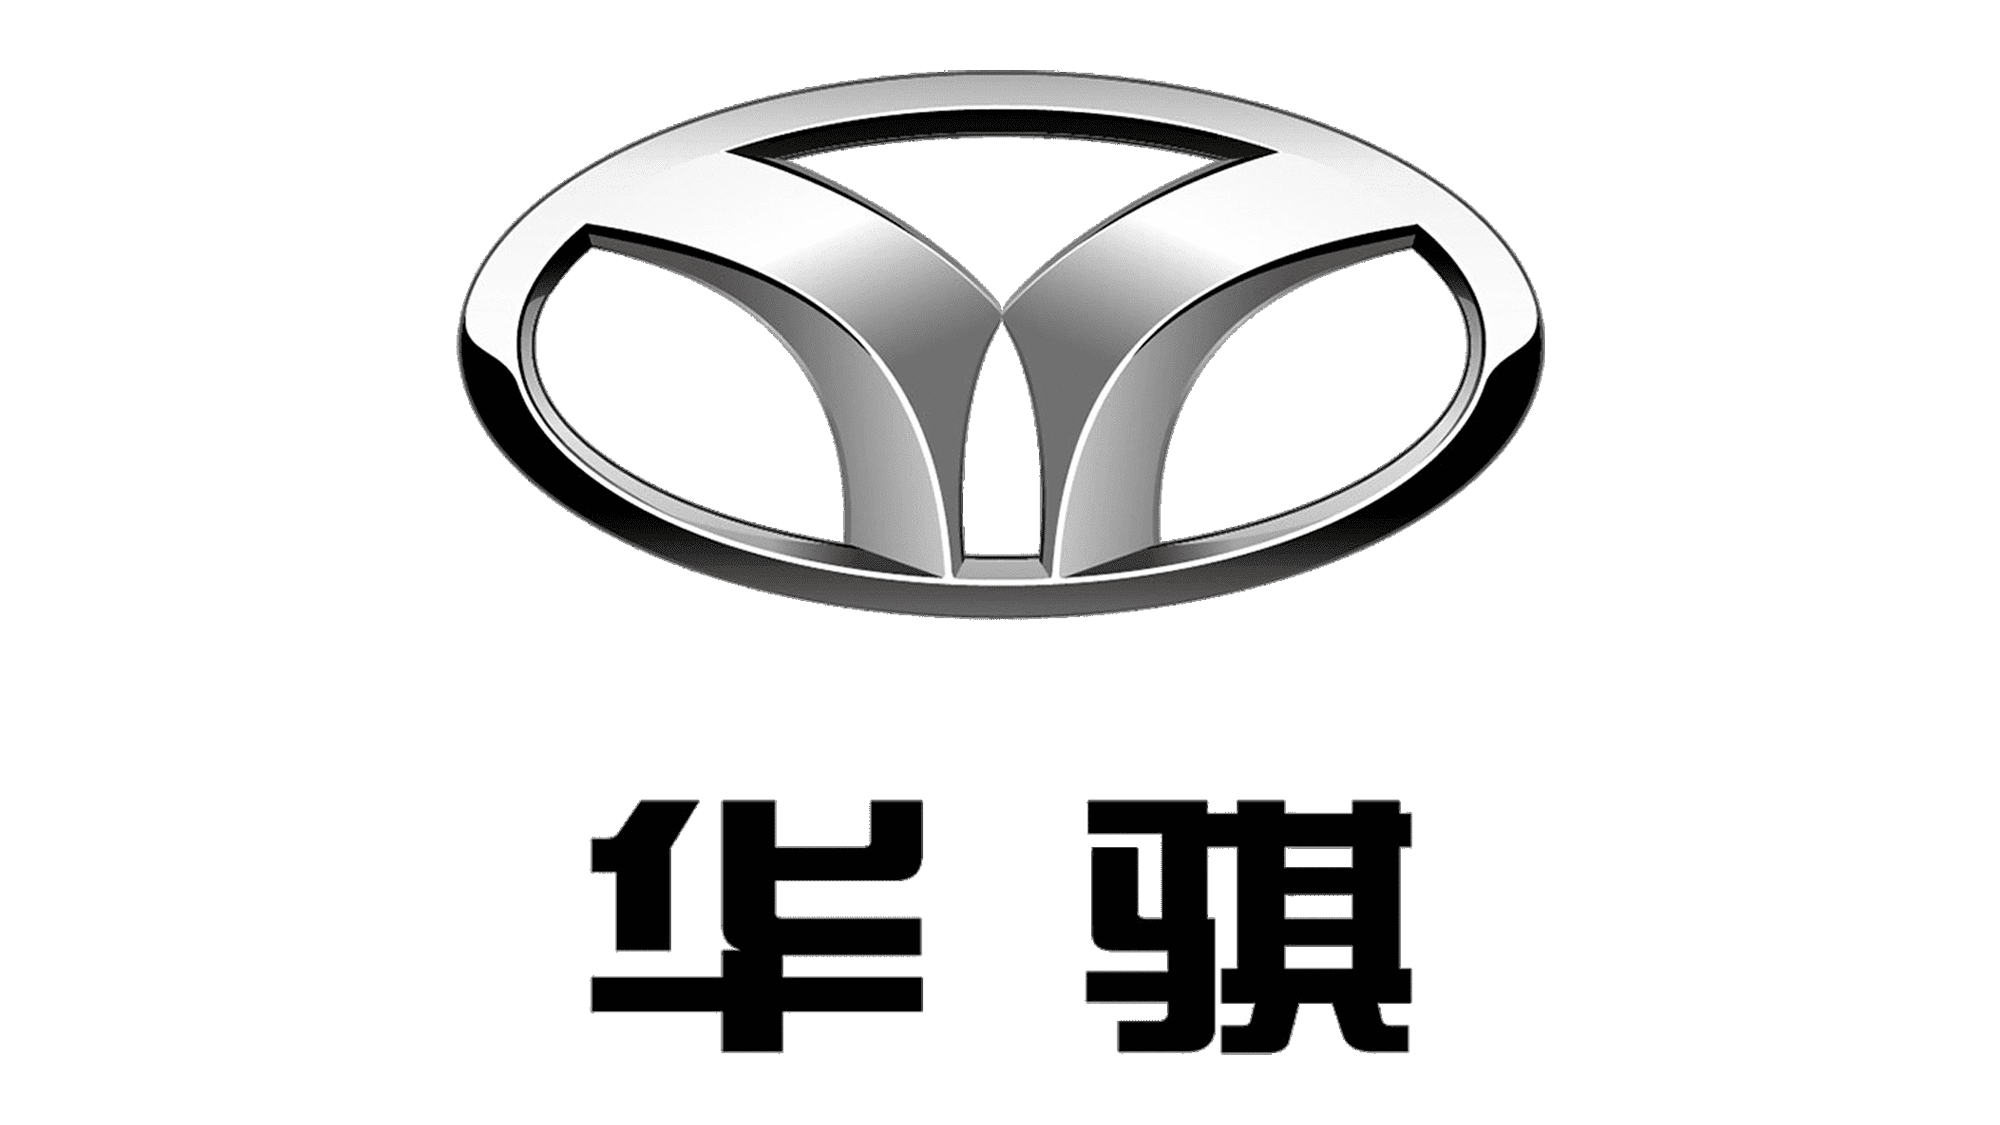 Значки китайских марок авто. Значки автомобилей. Эмблемы китайских автомобилей. Марки китайских автомобилей со значками. Логотипы корейских авто.